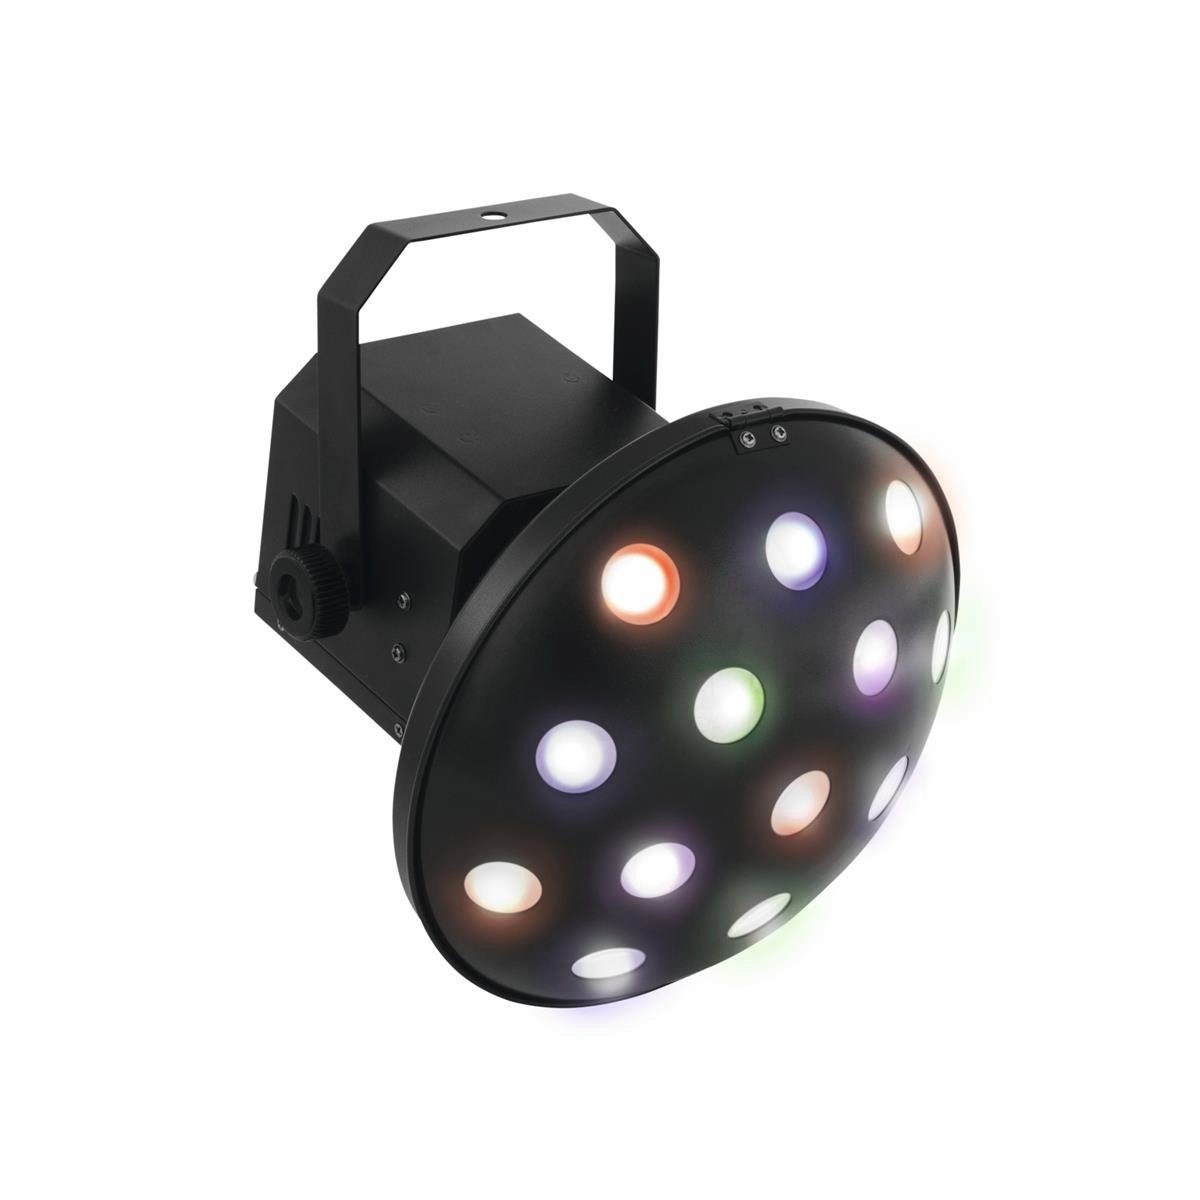 EUROLITE Pilzkopfeffekt Discolicht DMX Z-1000 Auto Strahleneffekt raumfüllender LED